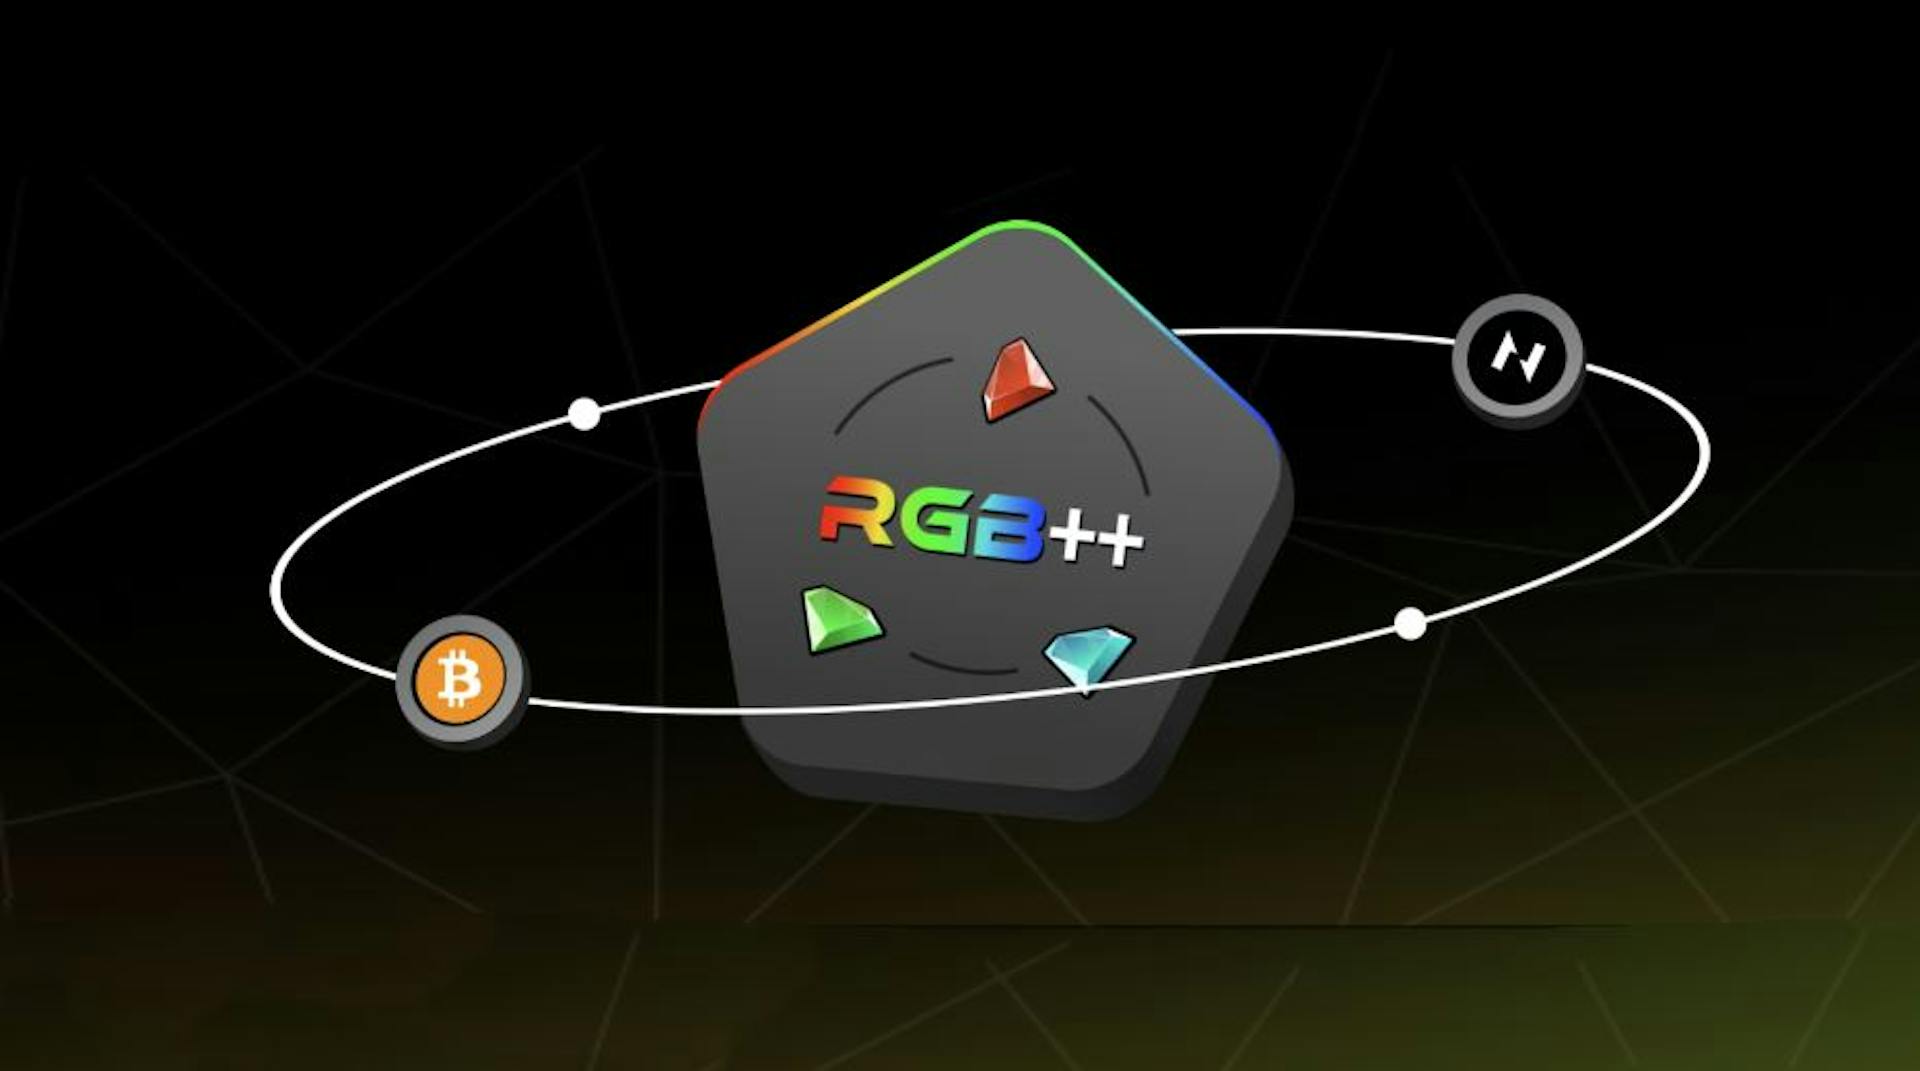 featured image - S'appuyer sur Bitcoin : guide du débutant pour utiliser le protocole RGB++